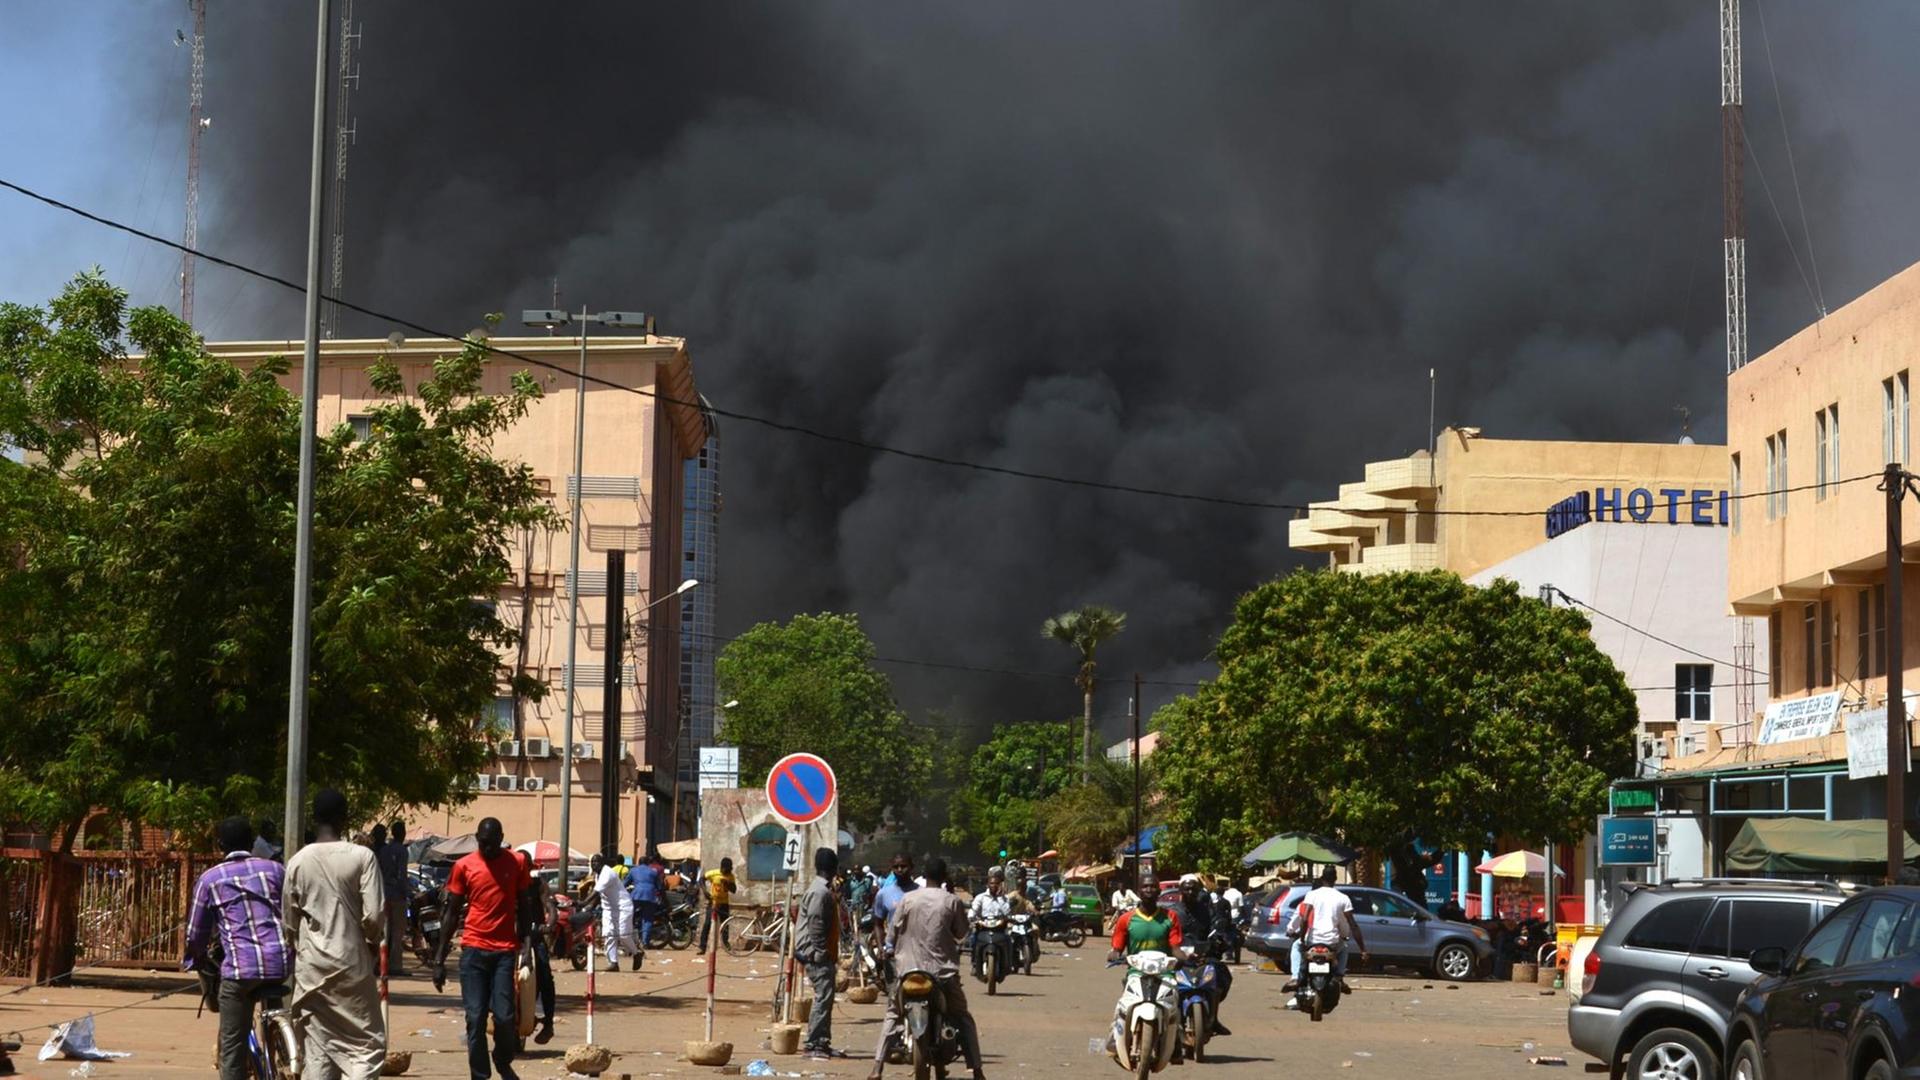 In Ouagadougou, der Hauptstadt von Burkina Faso, sind nach einem Terrorangriff dichte Rauchsäulen zu sehen.